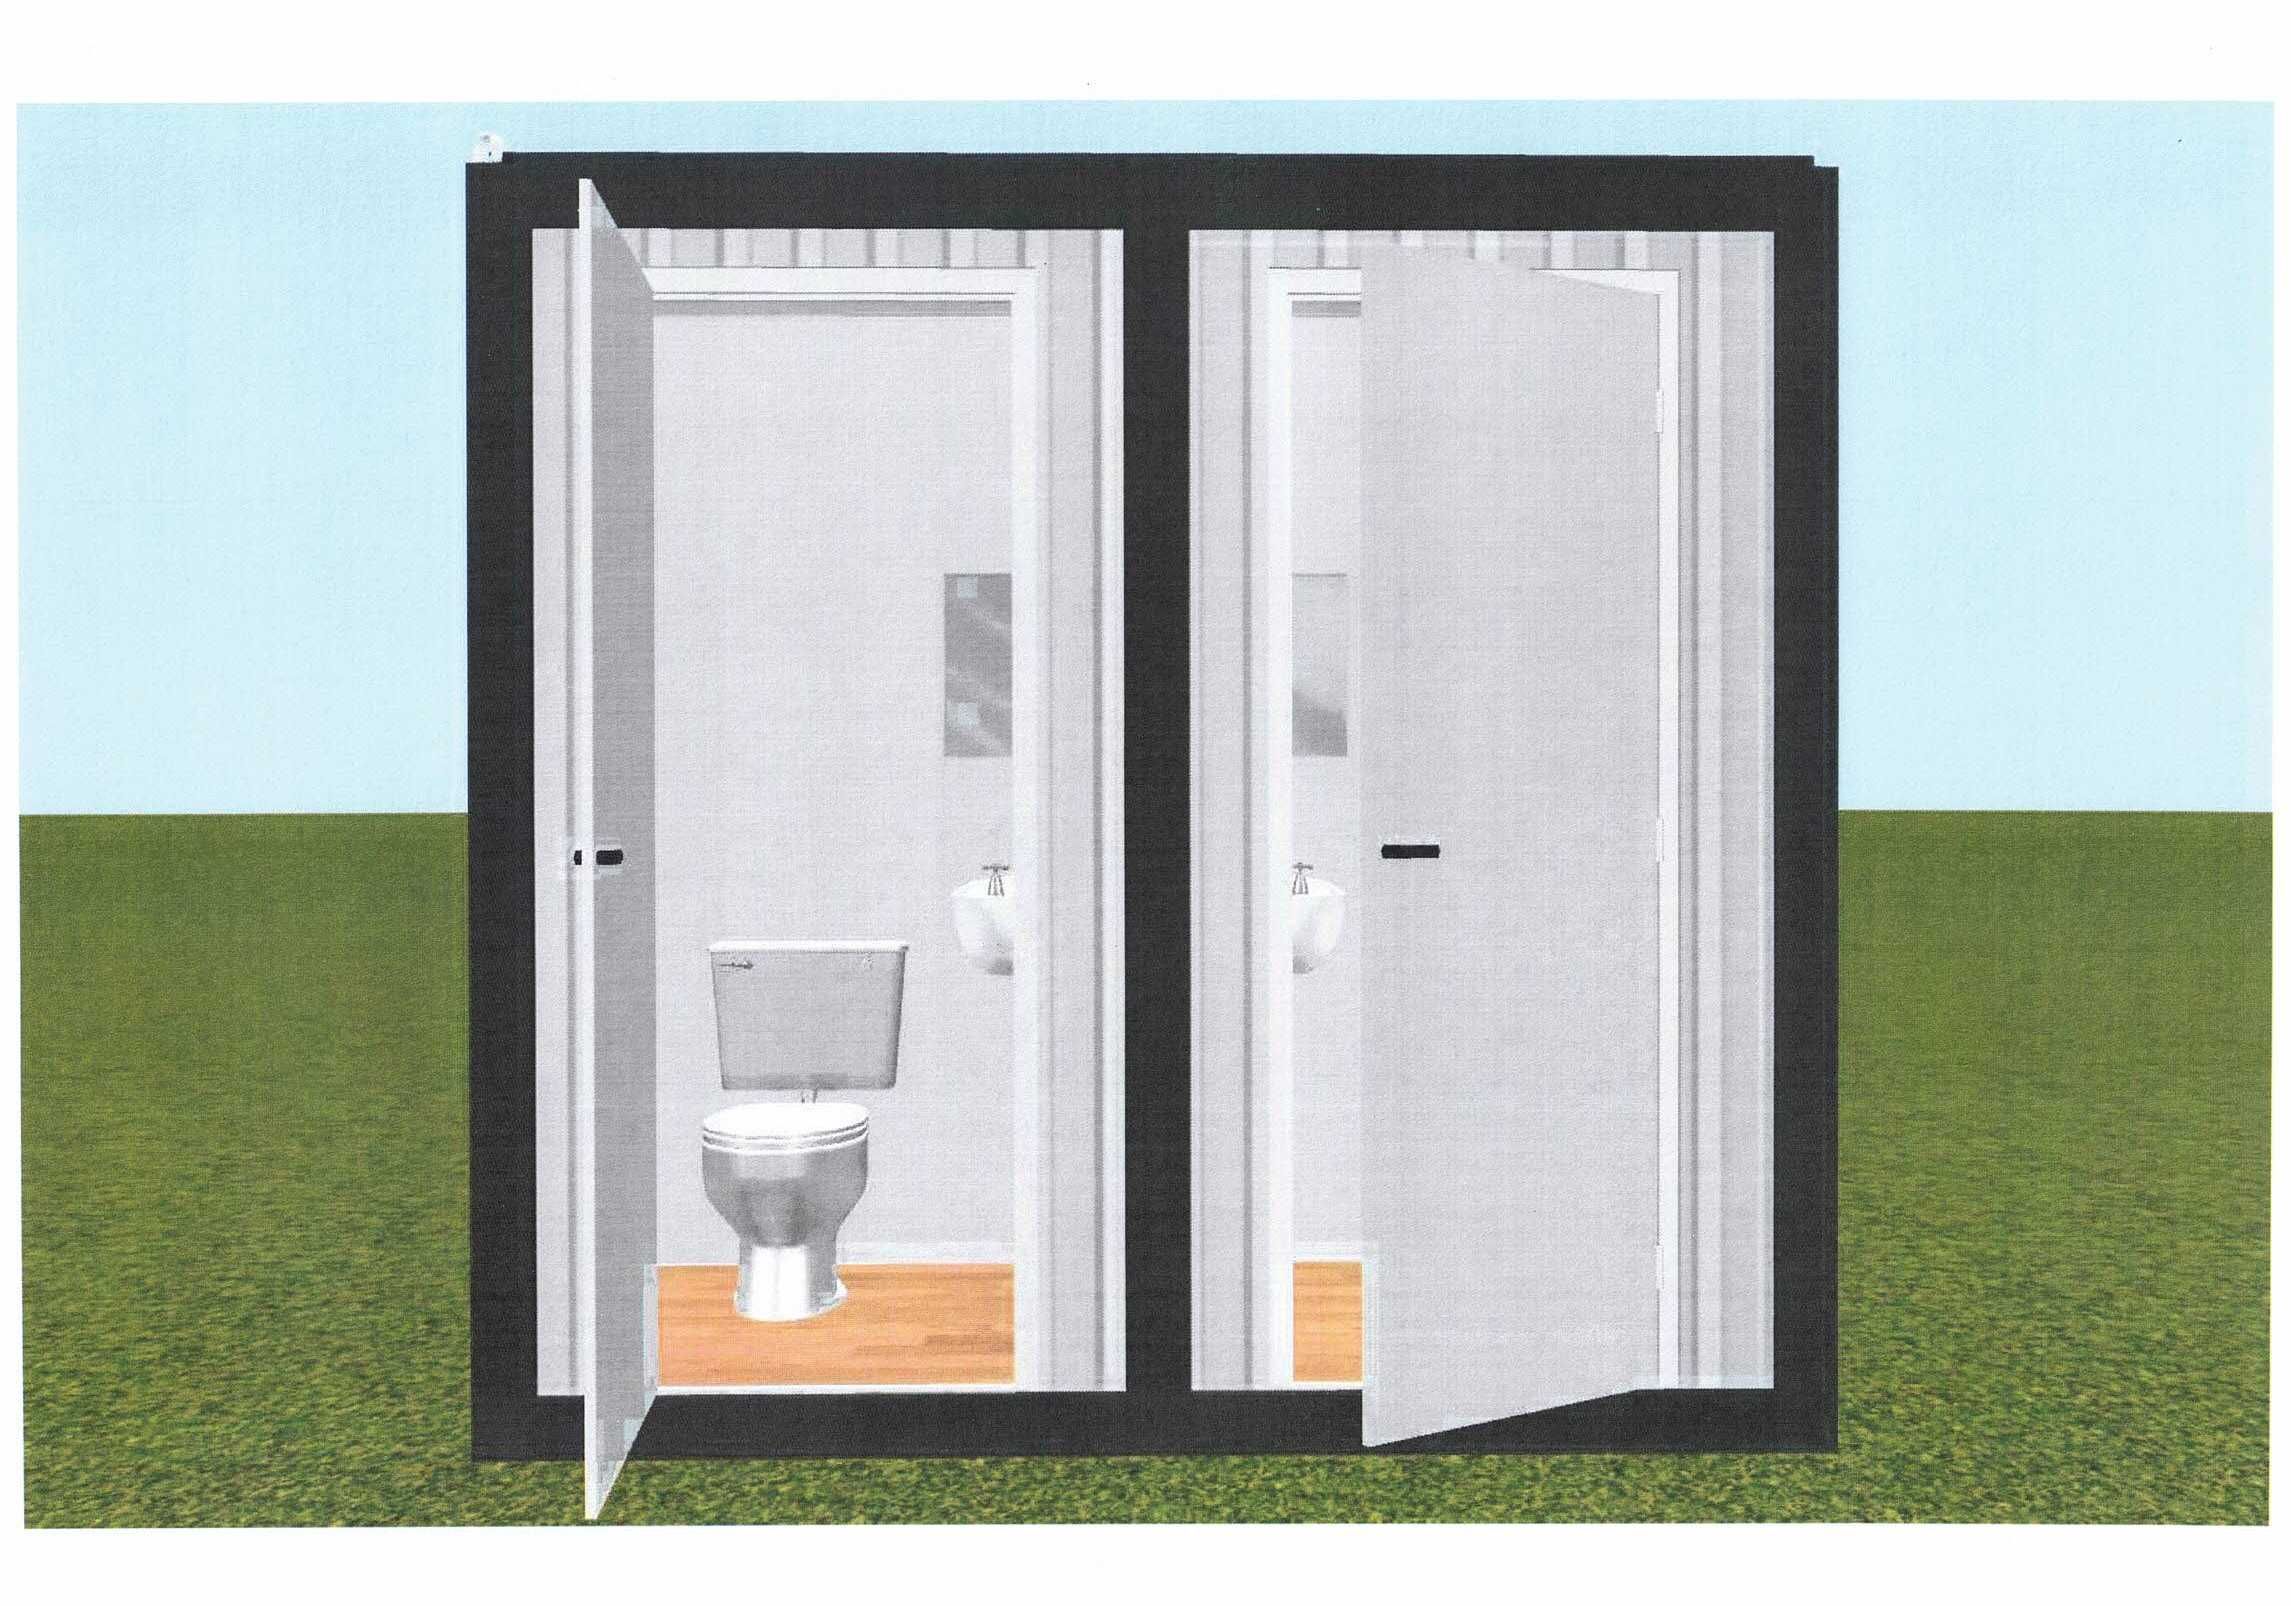 Oferim servicii de inchiriere  toalete ecologice,containere ,cabia wc